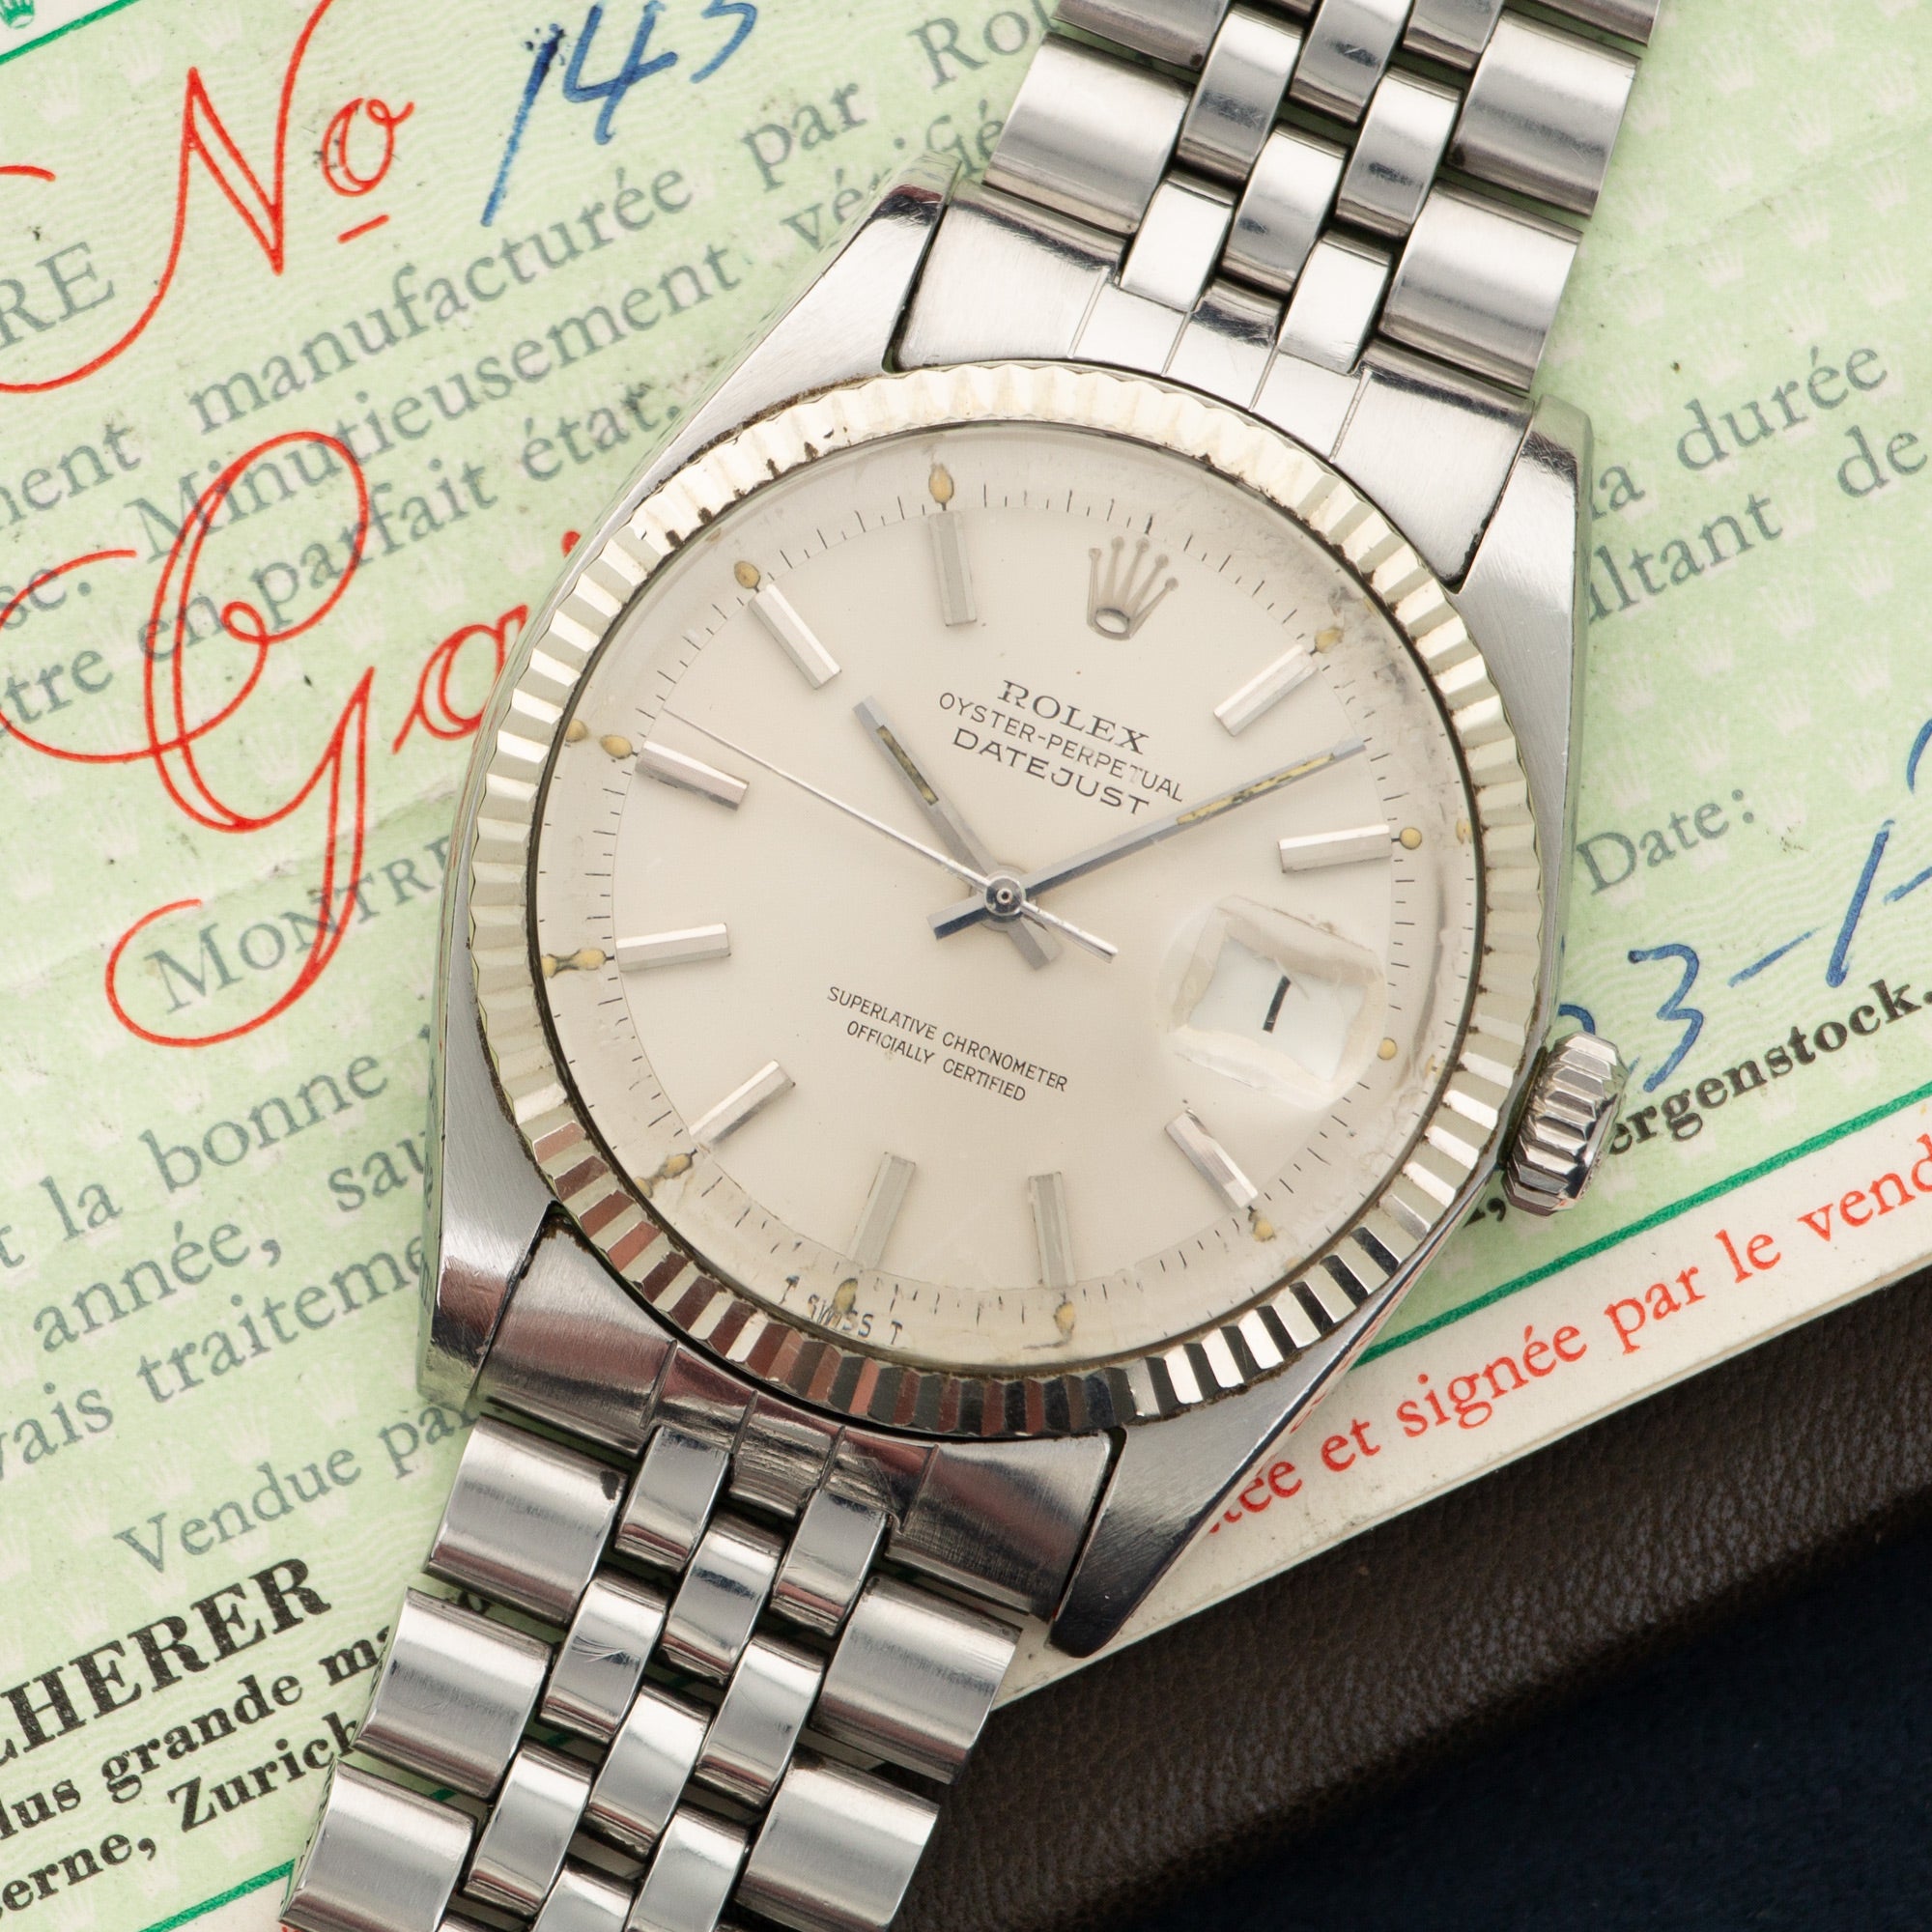 Rolex - Rolex Datejust Watch Ref. 1601 with Original Paper - The Keystone Watches